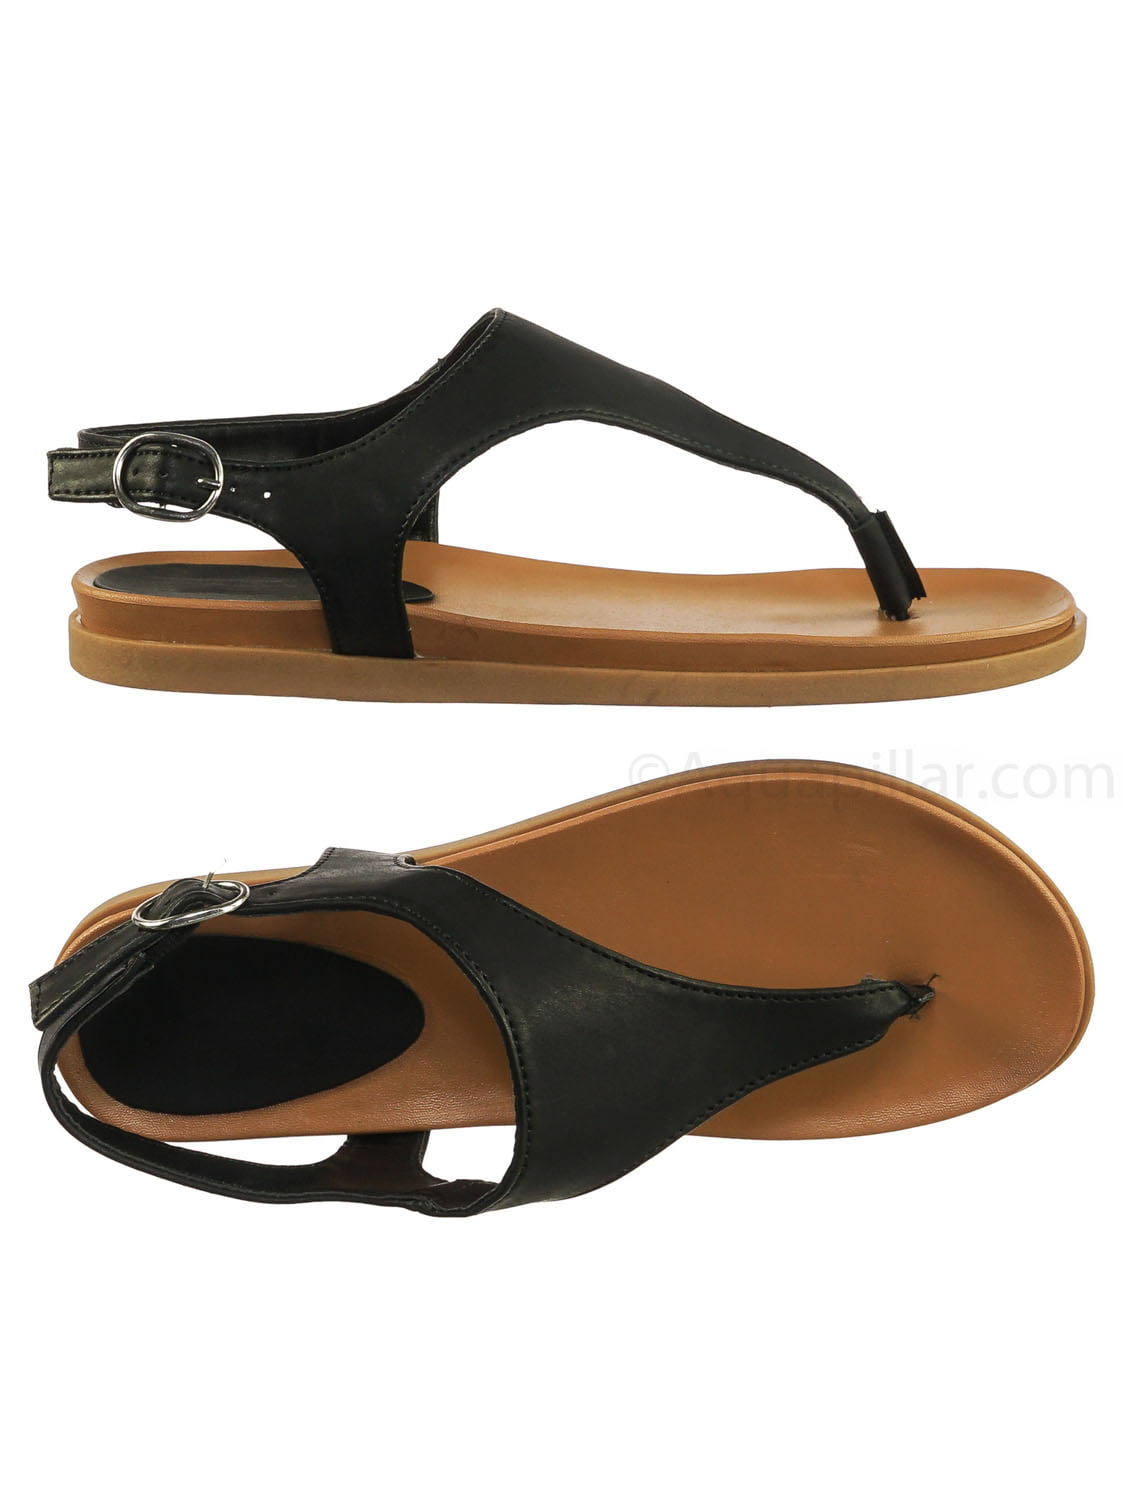 rubber t strap sandals